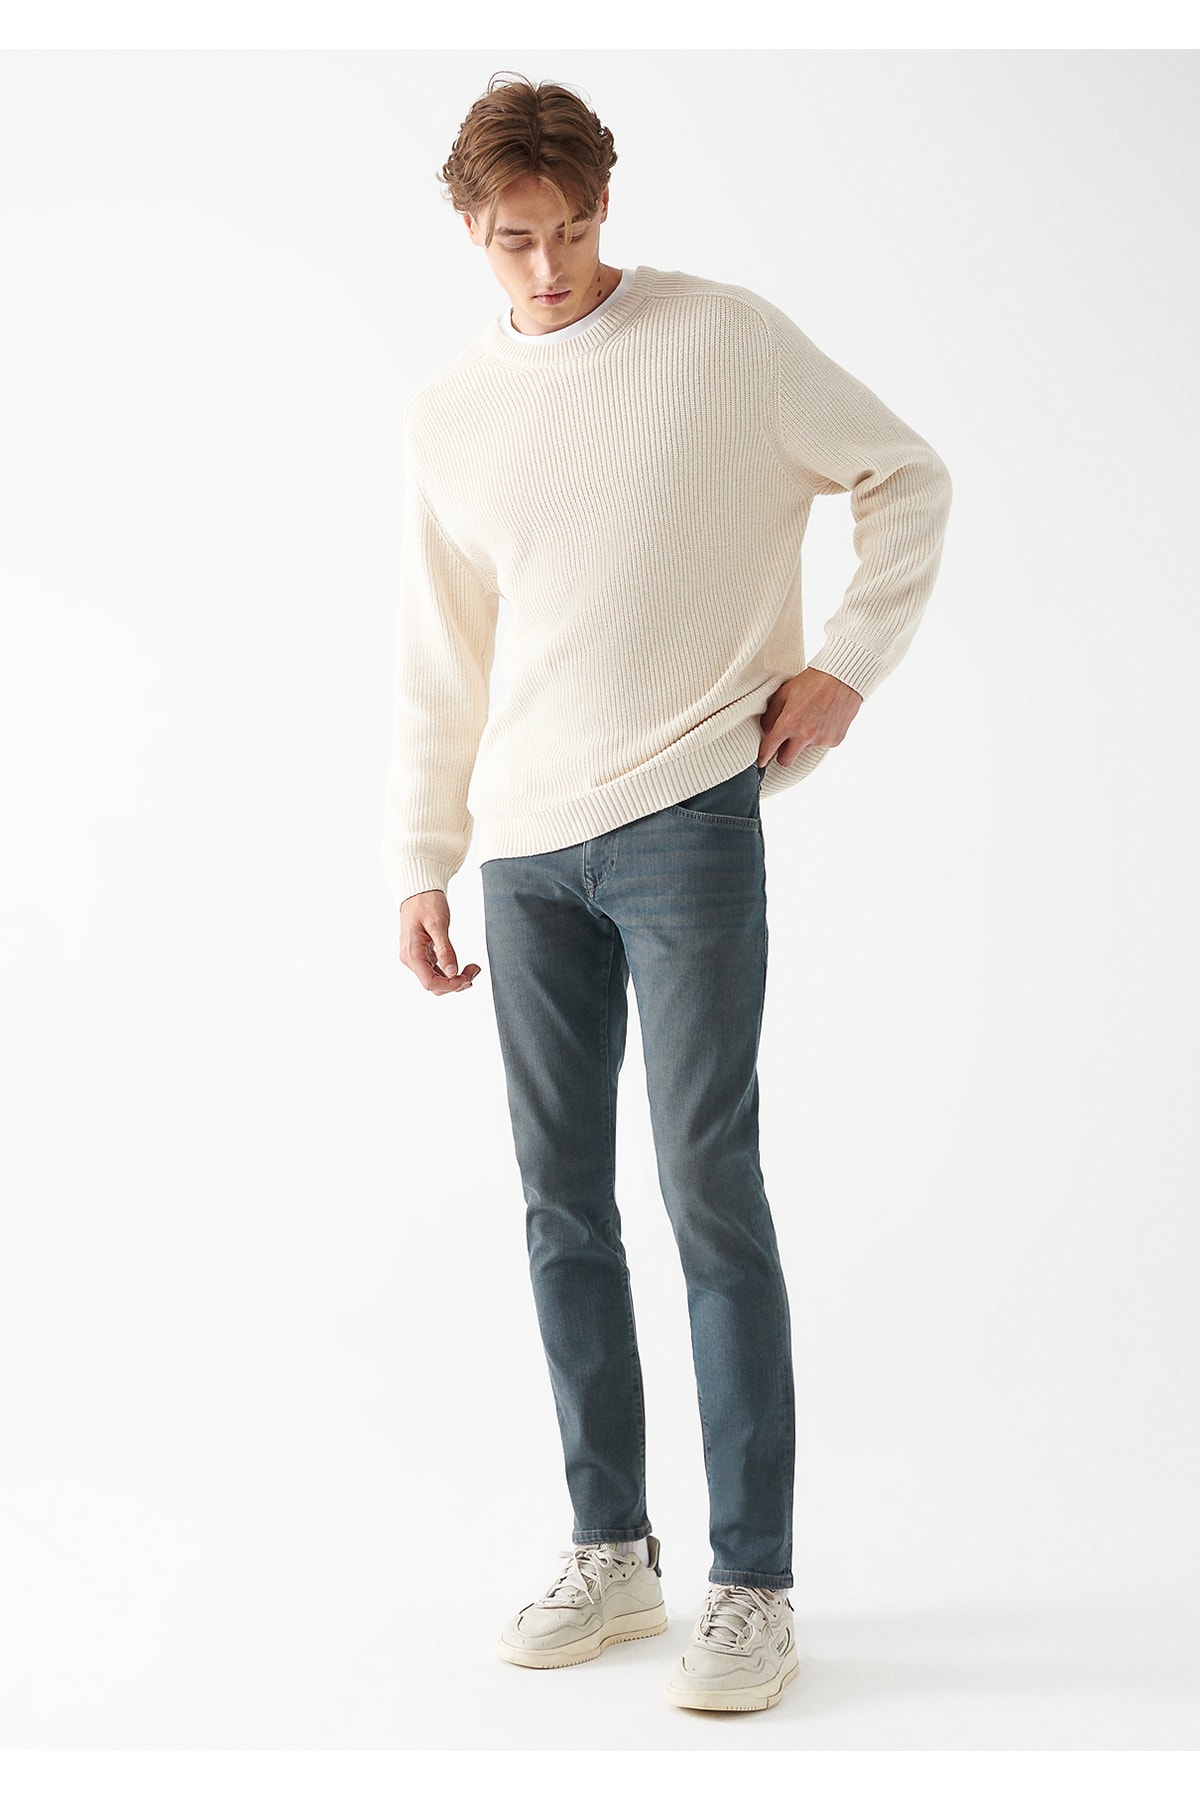 شلوار ماوی جین آبی  پاچه تنگ و کمر استاندارد مدل مارکوس ترک MAVI